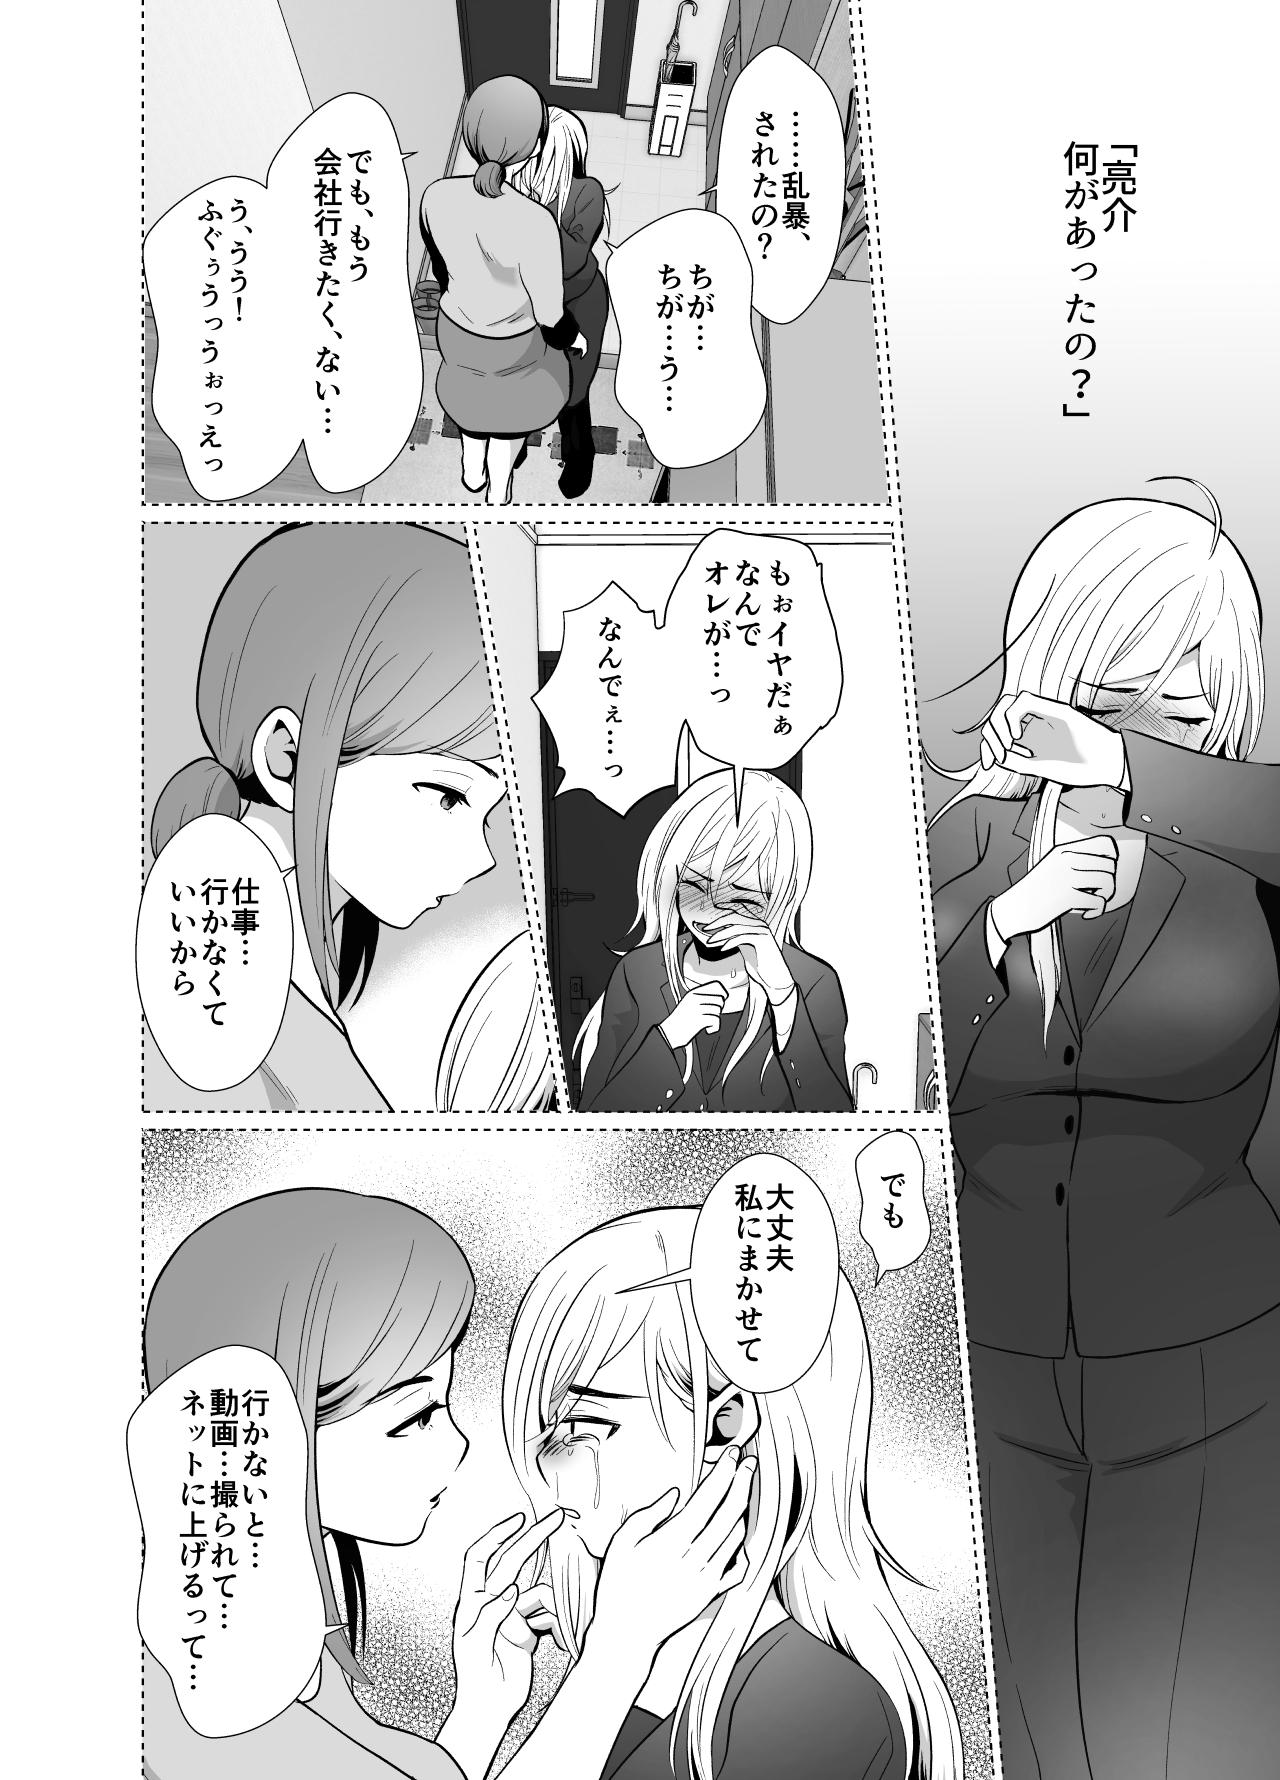 Aunt uwakisyou no otto kusuri wo nomase tsuduketa kekka 2 Female - Page 9